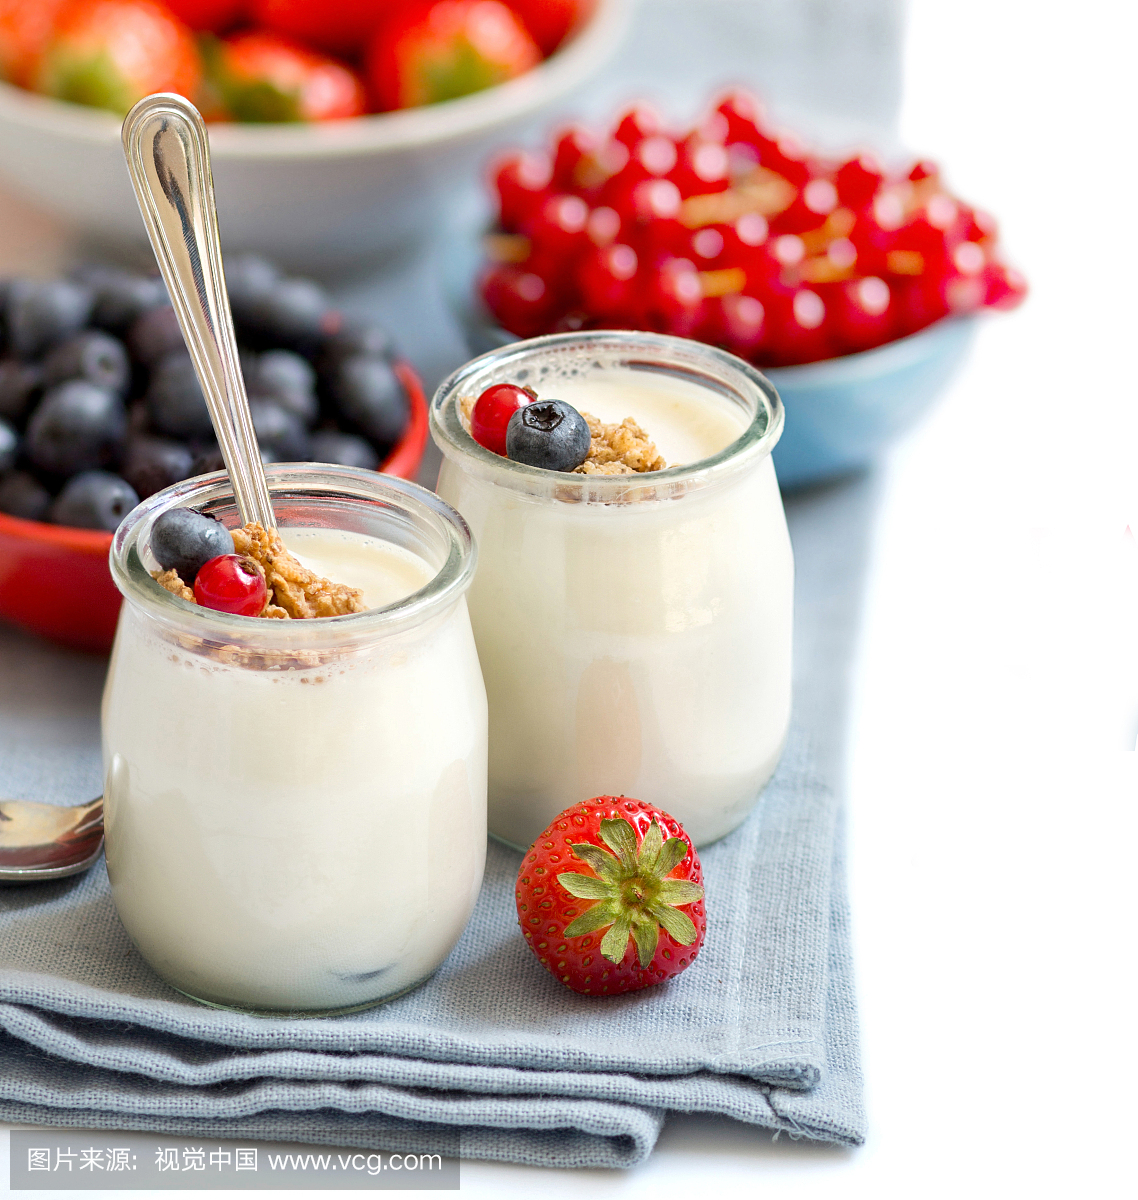 Healthy breakfast with Fresh yogurt, muesli and